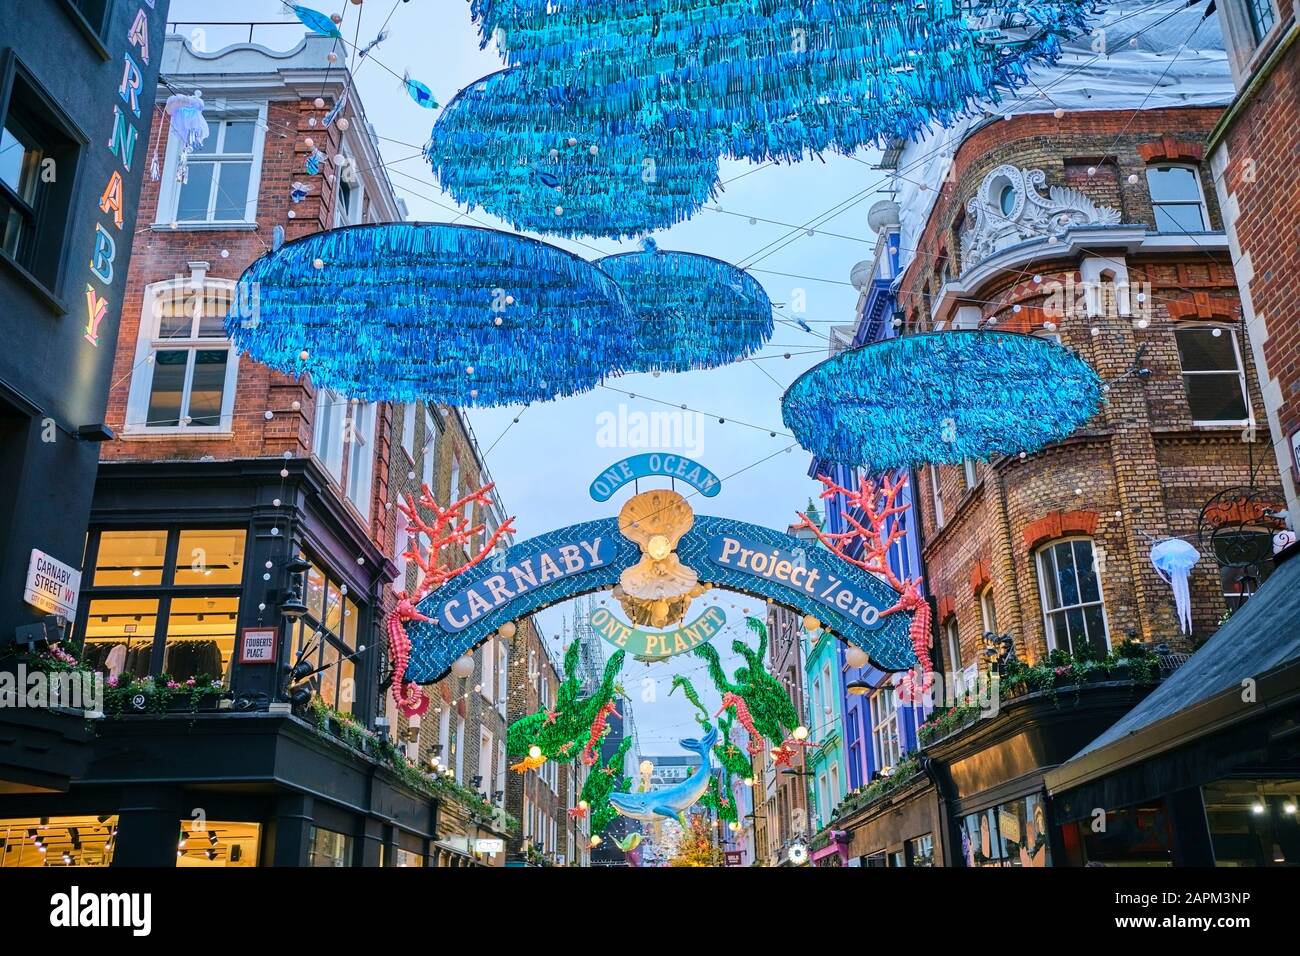 Royaume-Uni, Angleterre, Londres, décorations Sealife accrochées sur Carnaby Street lors d'un événement caritatif pour la conservation des océans Banque D'Images